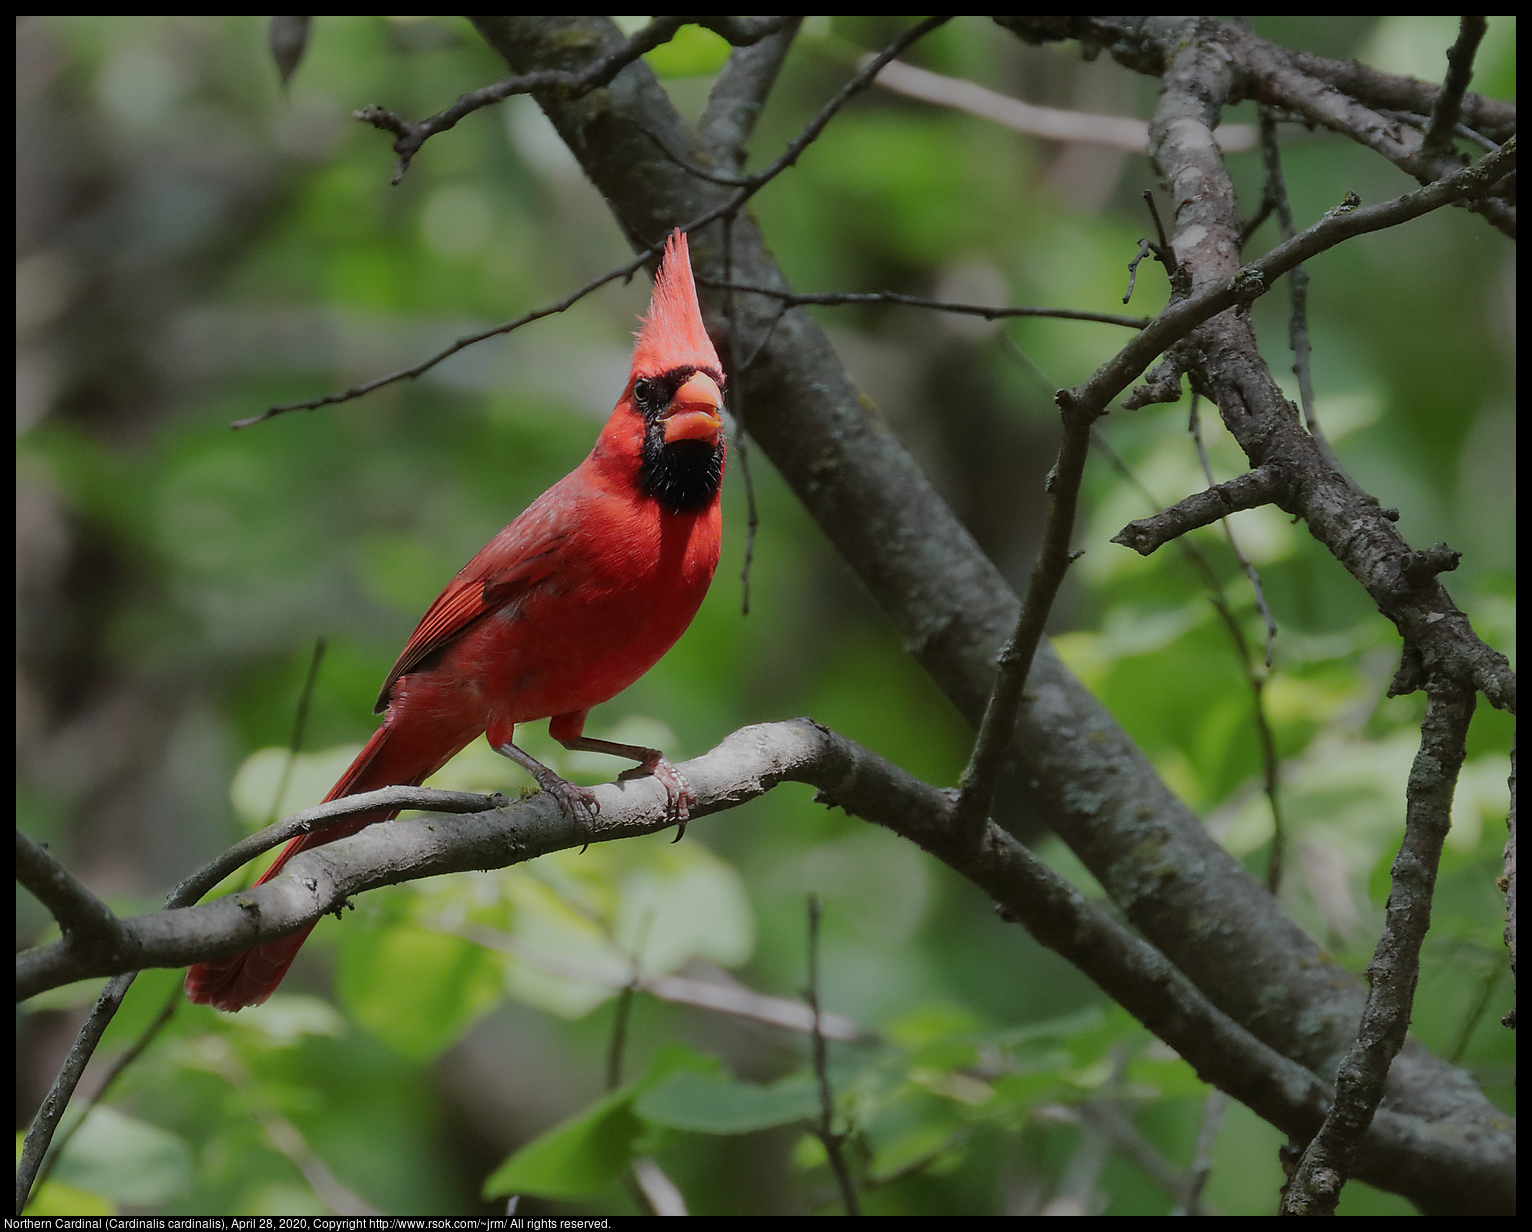 Northern Cardinal (Cardinalis cardinalis), April 28, 2020